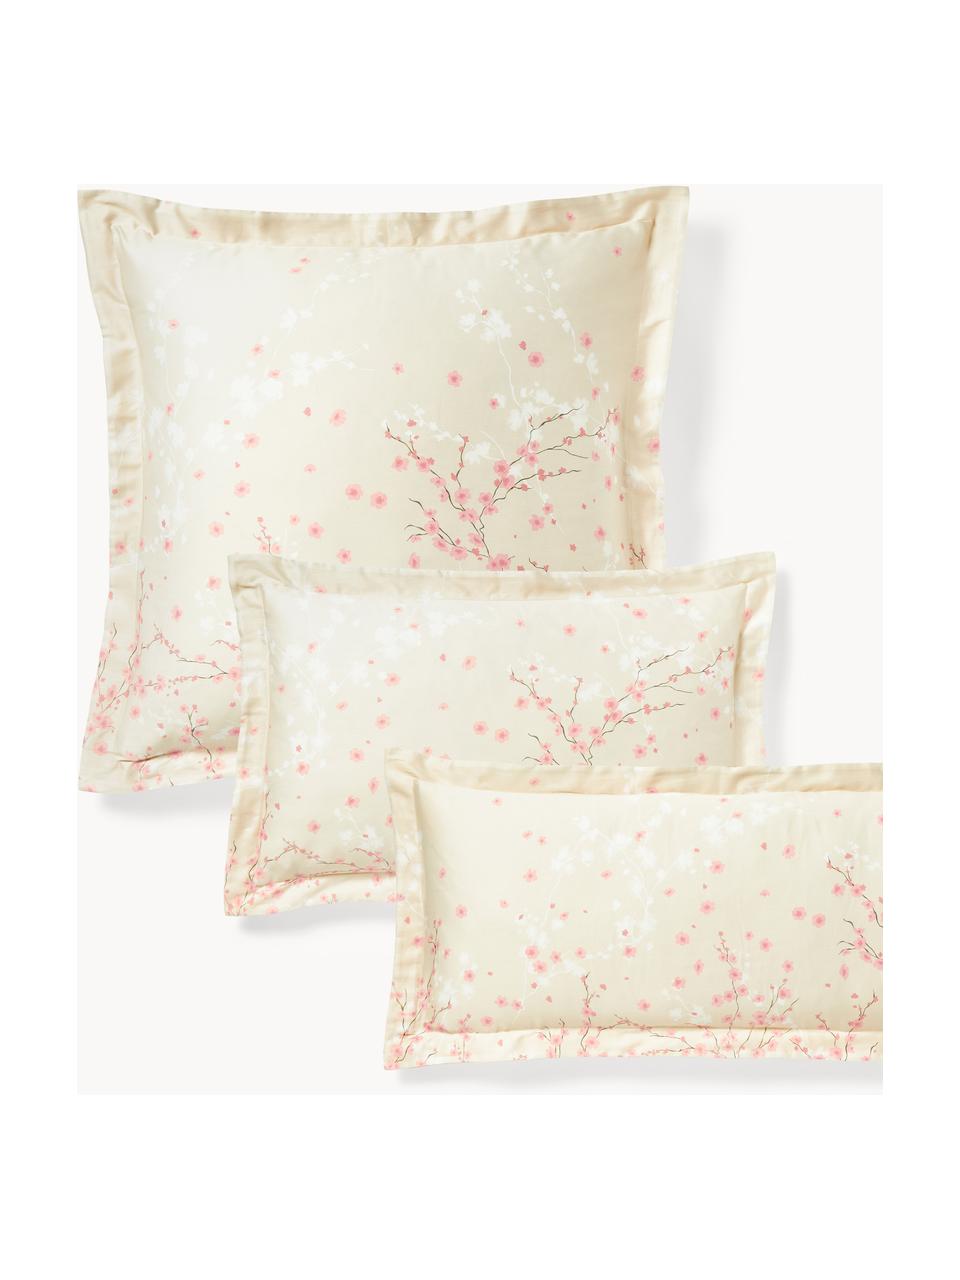 Federa in raso di cotone con stampa floreale Sakura, Beige chiaro, rosa chiaro, bianco, Larg. 50 x Lung. 80 cm